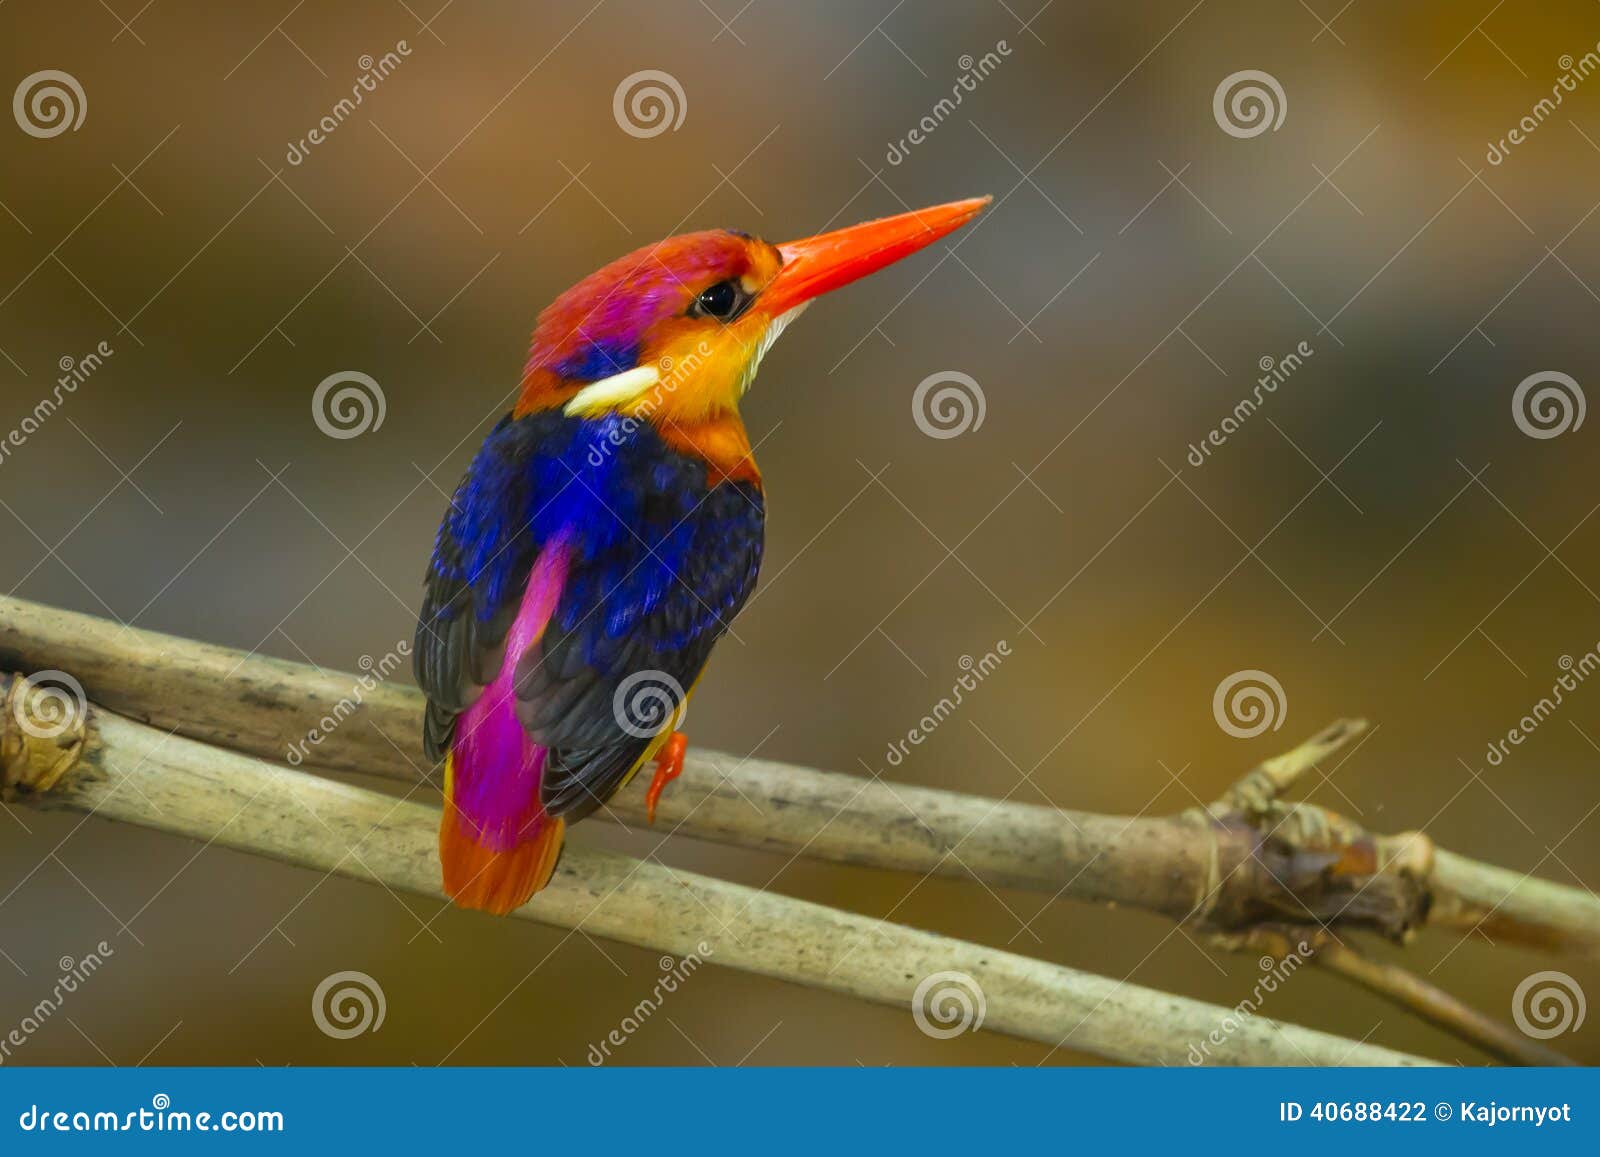 backside of black-backed kingfisher